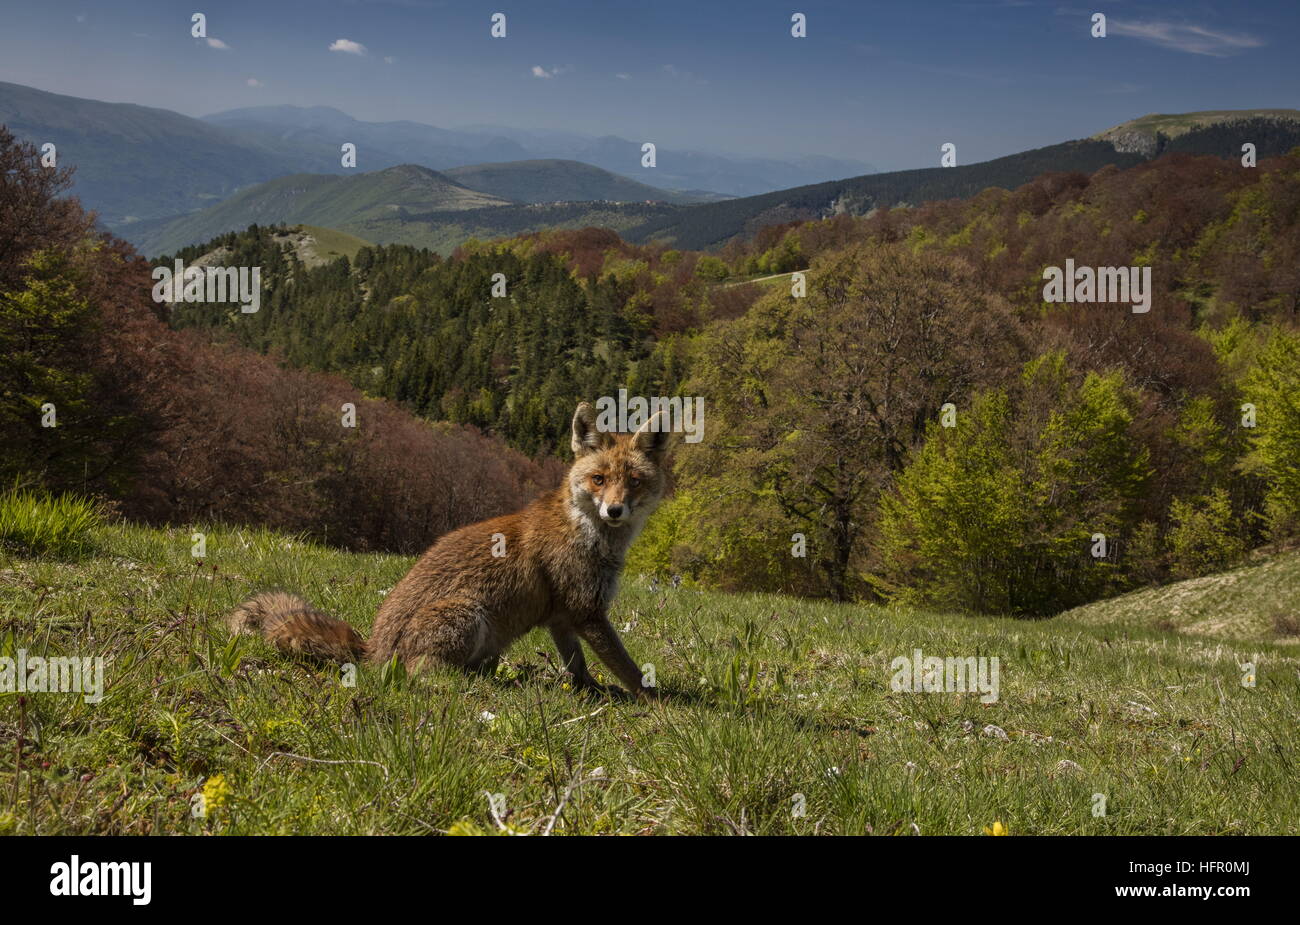 Red Fox, alta nel Parco Nazionale dei Monti Sibillini, Appennini, Italia. Foto Stock